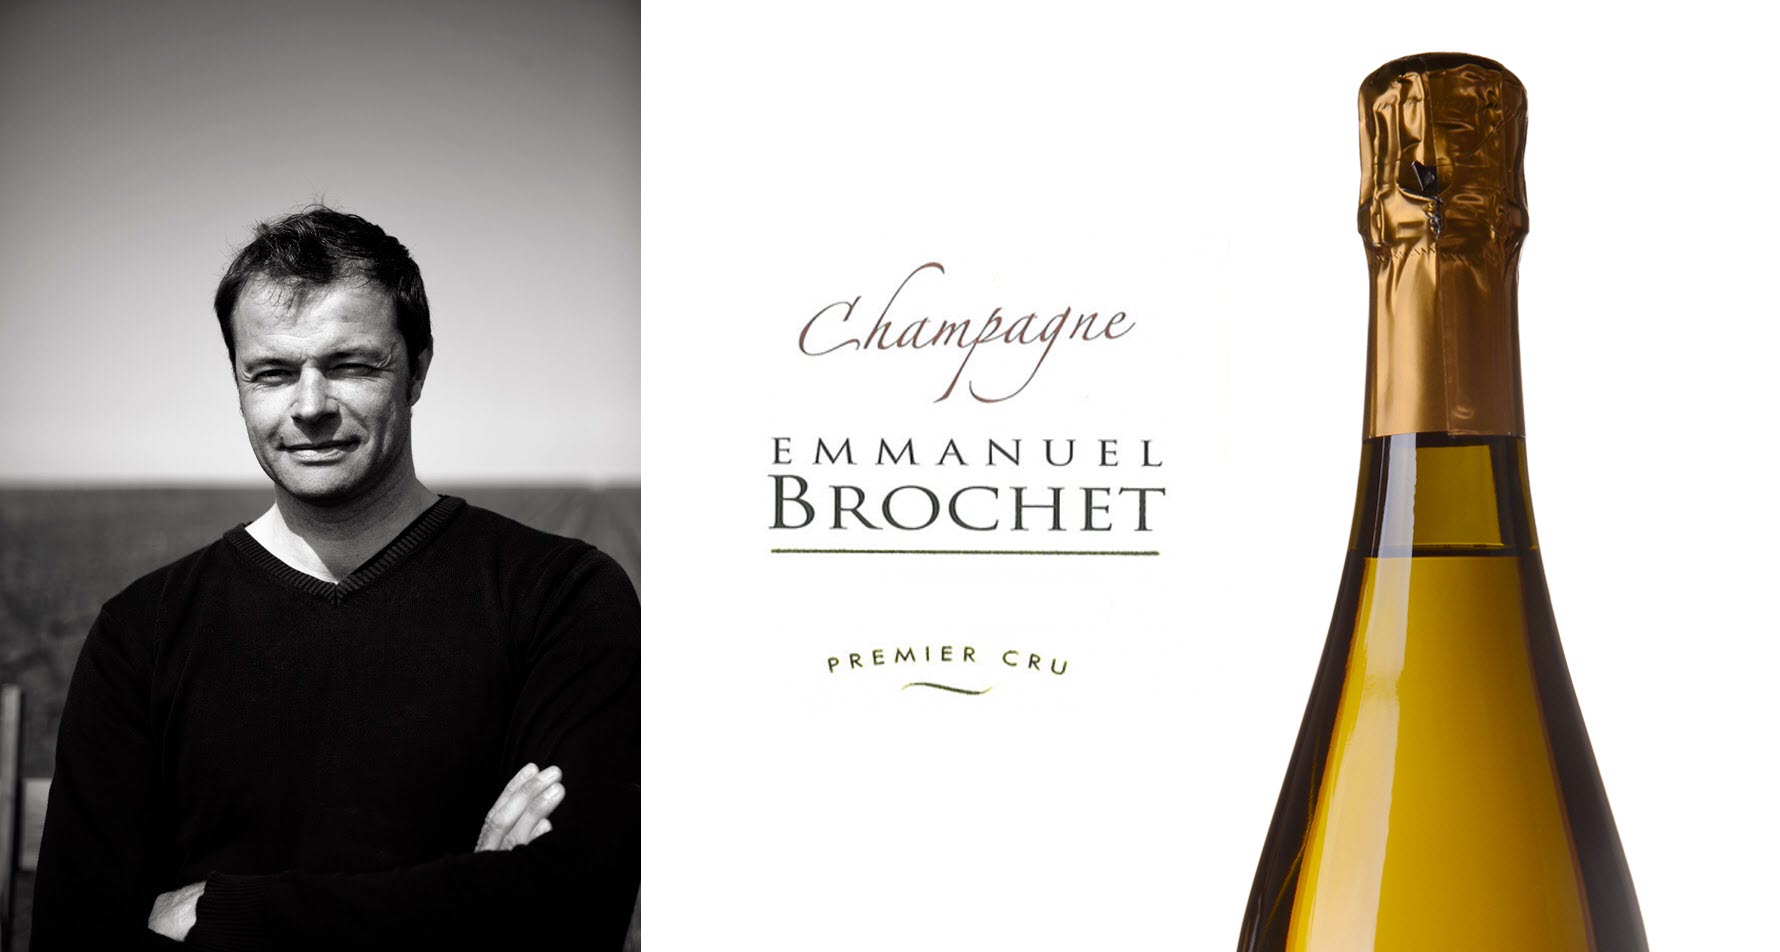 Champagne Emmanuel Brochet